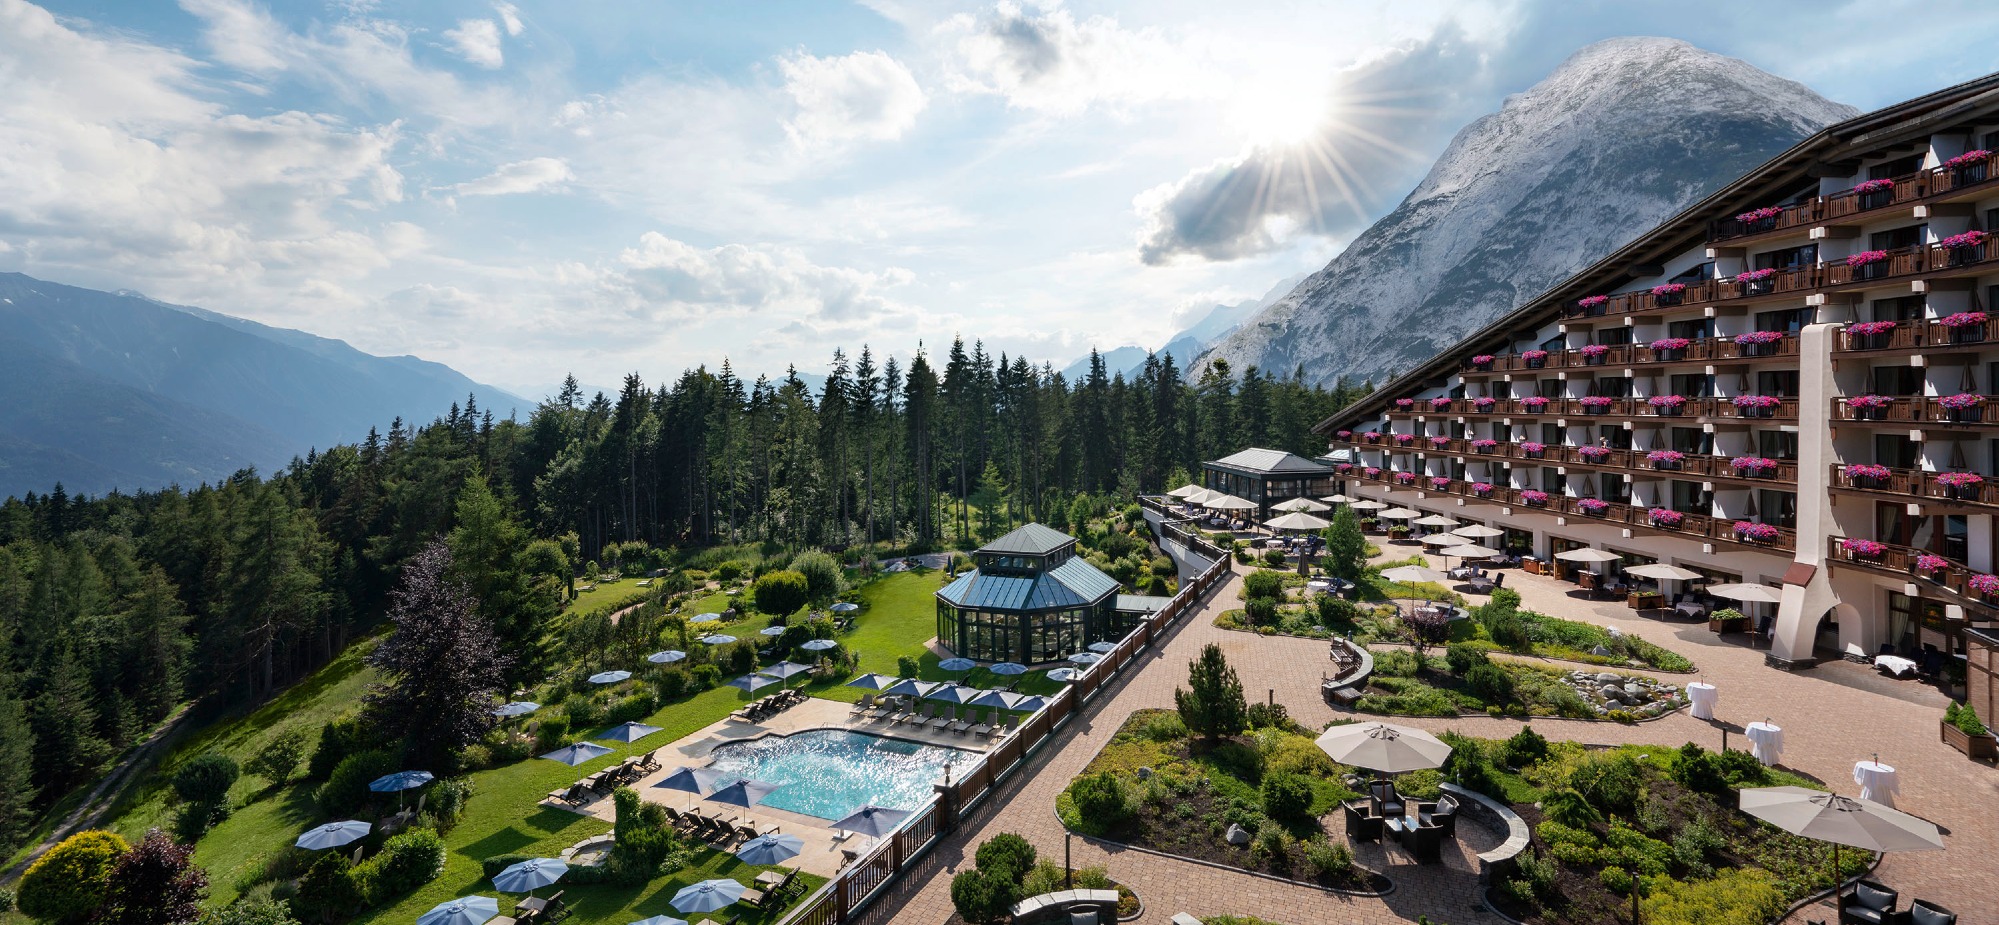 Interalpen - Hotel Tyrol Bilder | Bild 1